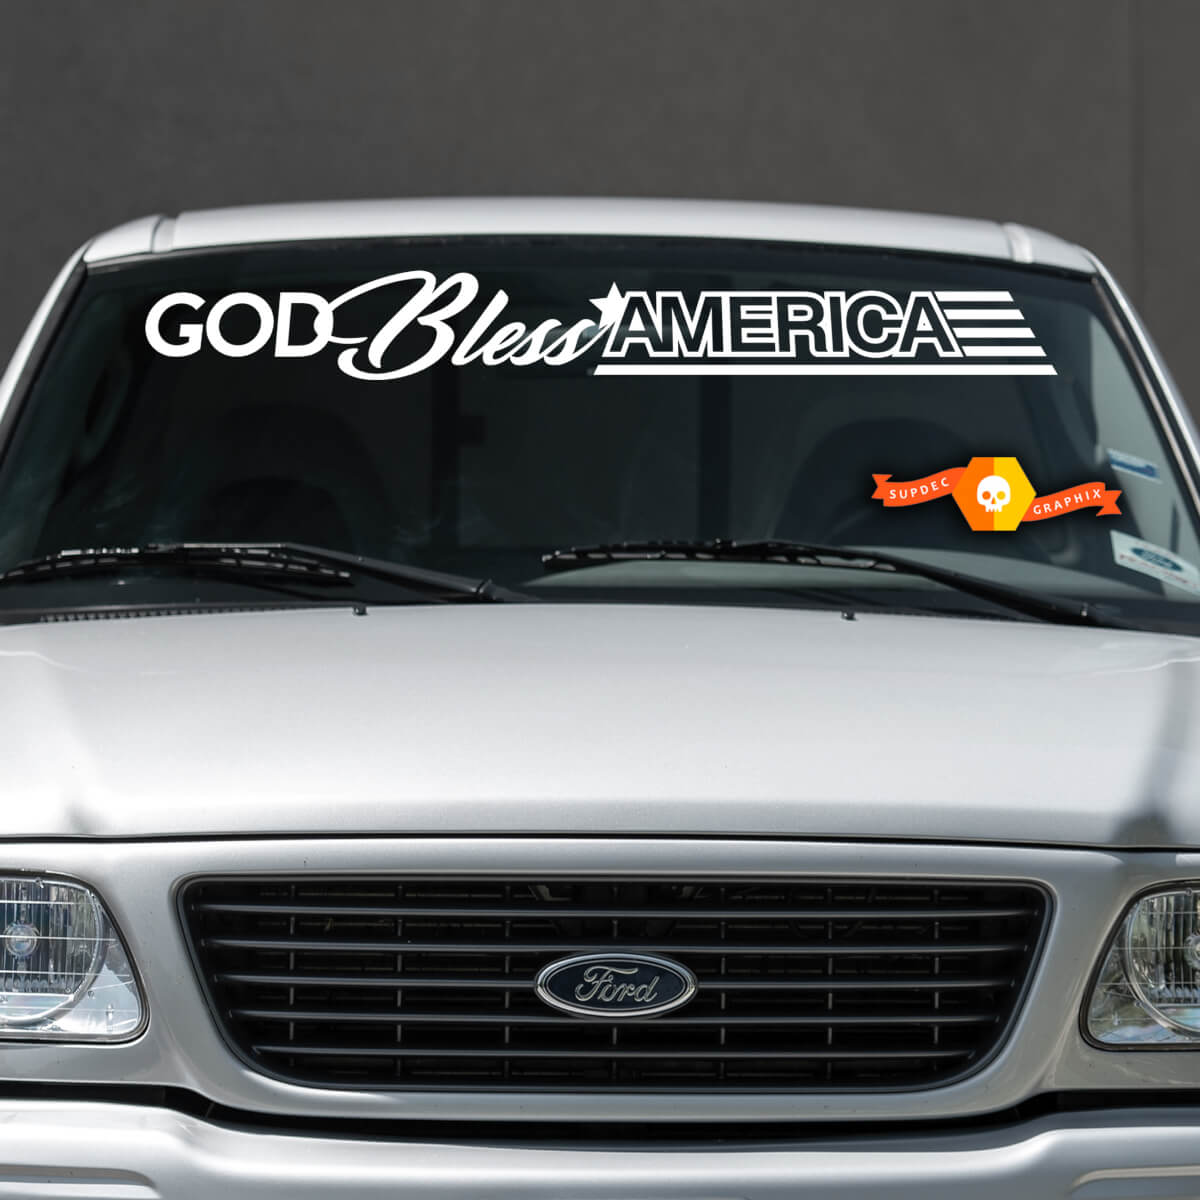 God Bless America Nissan Ford Chevrolet Jeep Auto- Windschutzscheiben-Aufkleber, Grafik, passend für alle Modelle